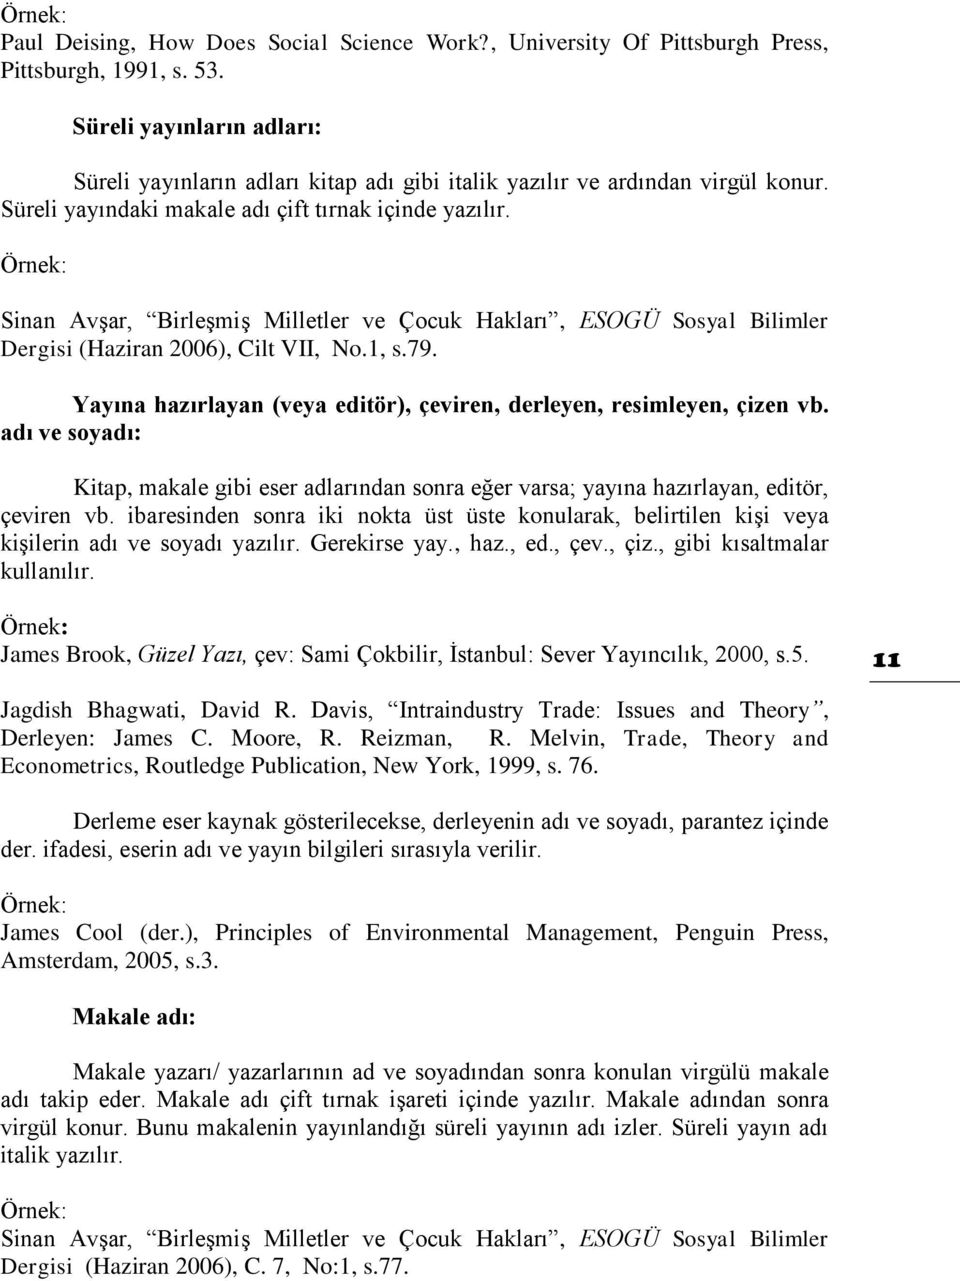 Örnek: Sinan Avşar, Birleşmiş Milletler ve Çocuk Hakları, ESOGÜ Sosyal Bilimler Dergisi (Haziran 2006), Cilt VII, No.1, s.79. Yayına hazırlayan (veya editör), çeviren, derleyen, resimleyen, çizen vb.